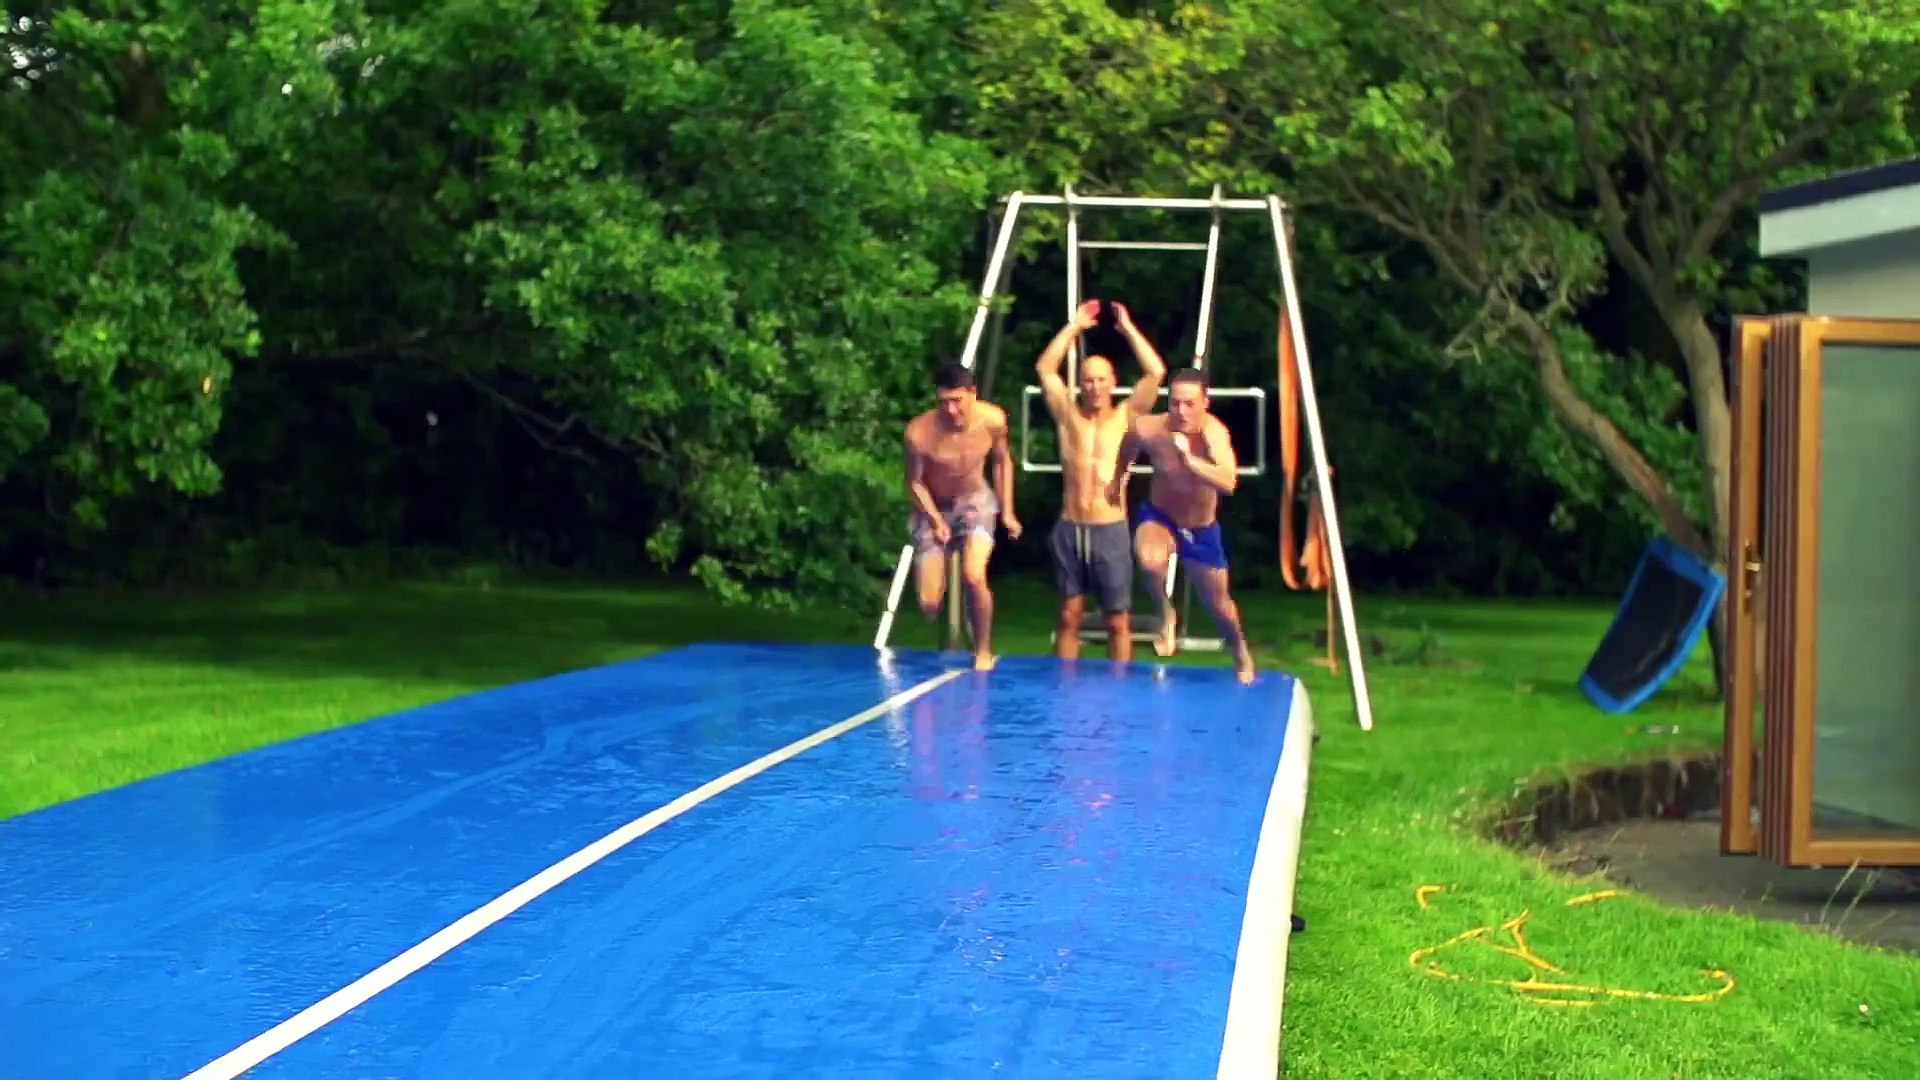 Des gars s'amusent sur un tapis gonflable glissant et font des tricks -  Vidéo Dailymotion